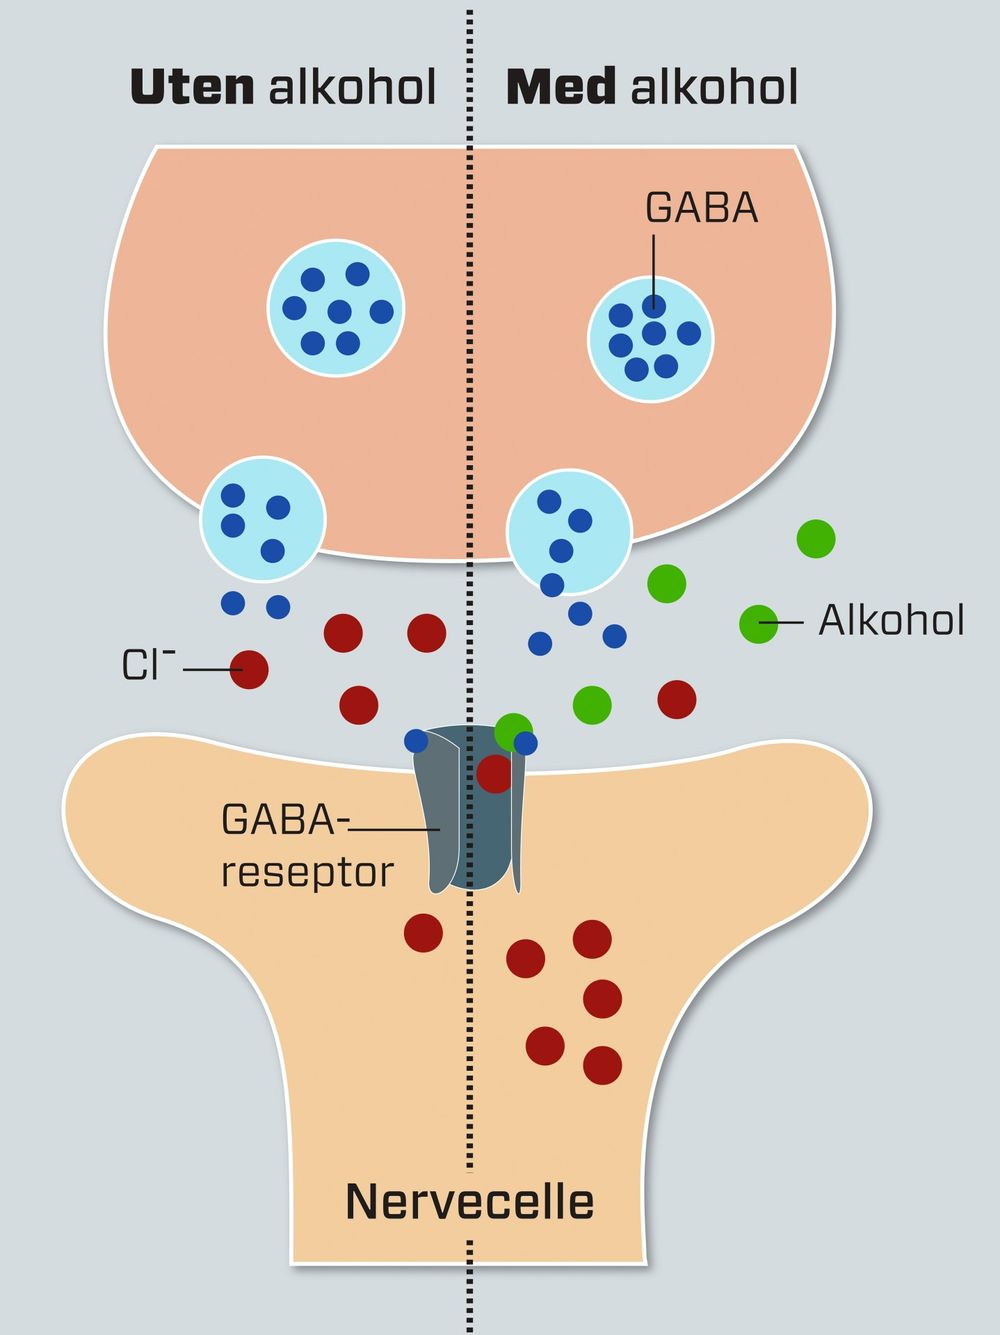     Alkohol fester seg til GABA-reseptoren og holder den åpen slik at den slipper gjennom flere klorioner. Disse endrer elektrisk ladning i nervecellen. GABA-reseptoren er en av mange reseptorer på den postsynaptiske nervecellen